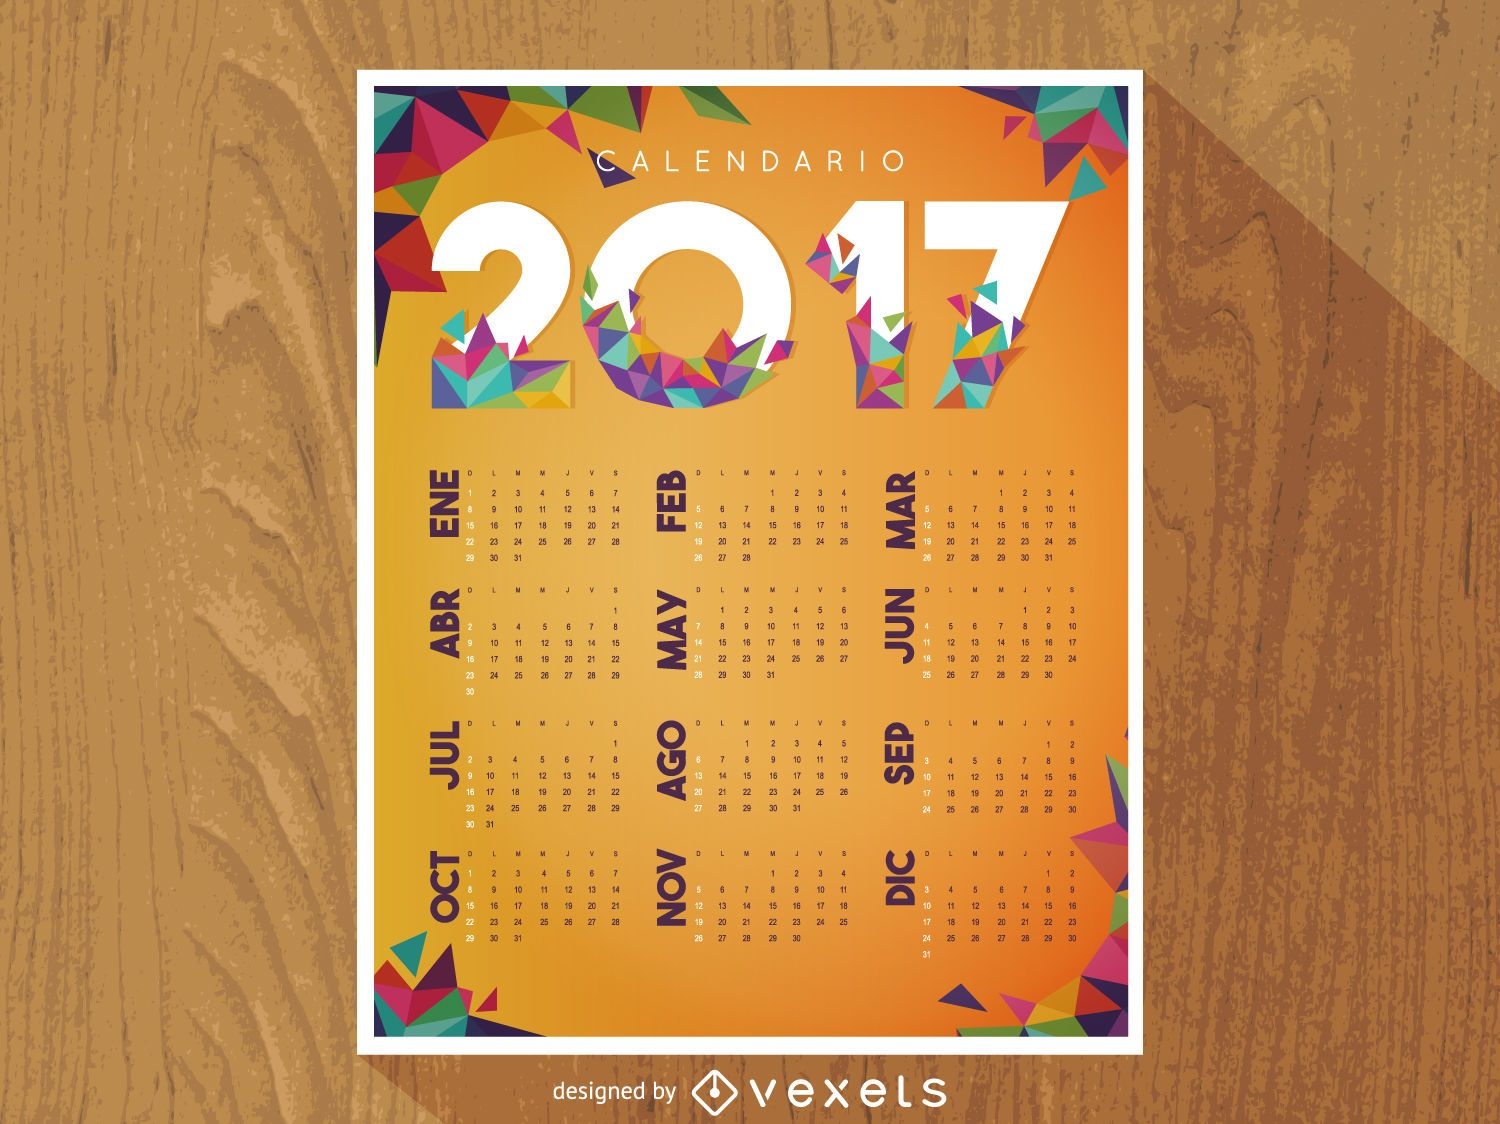 Calendario poligonal 2017 en espa?ol